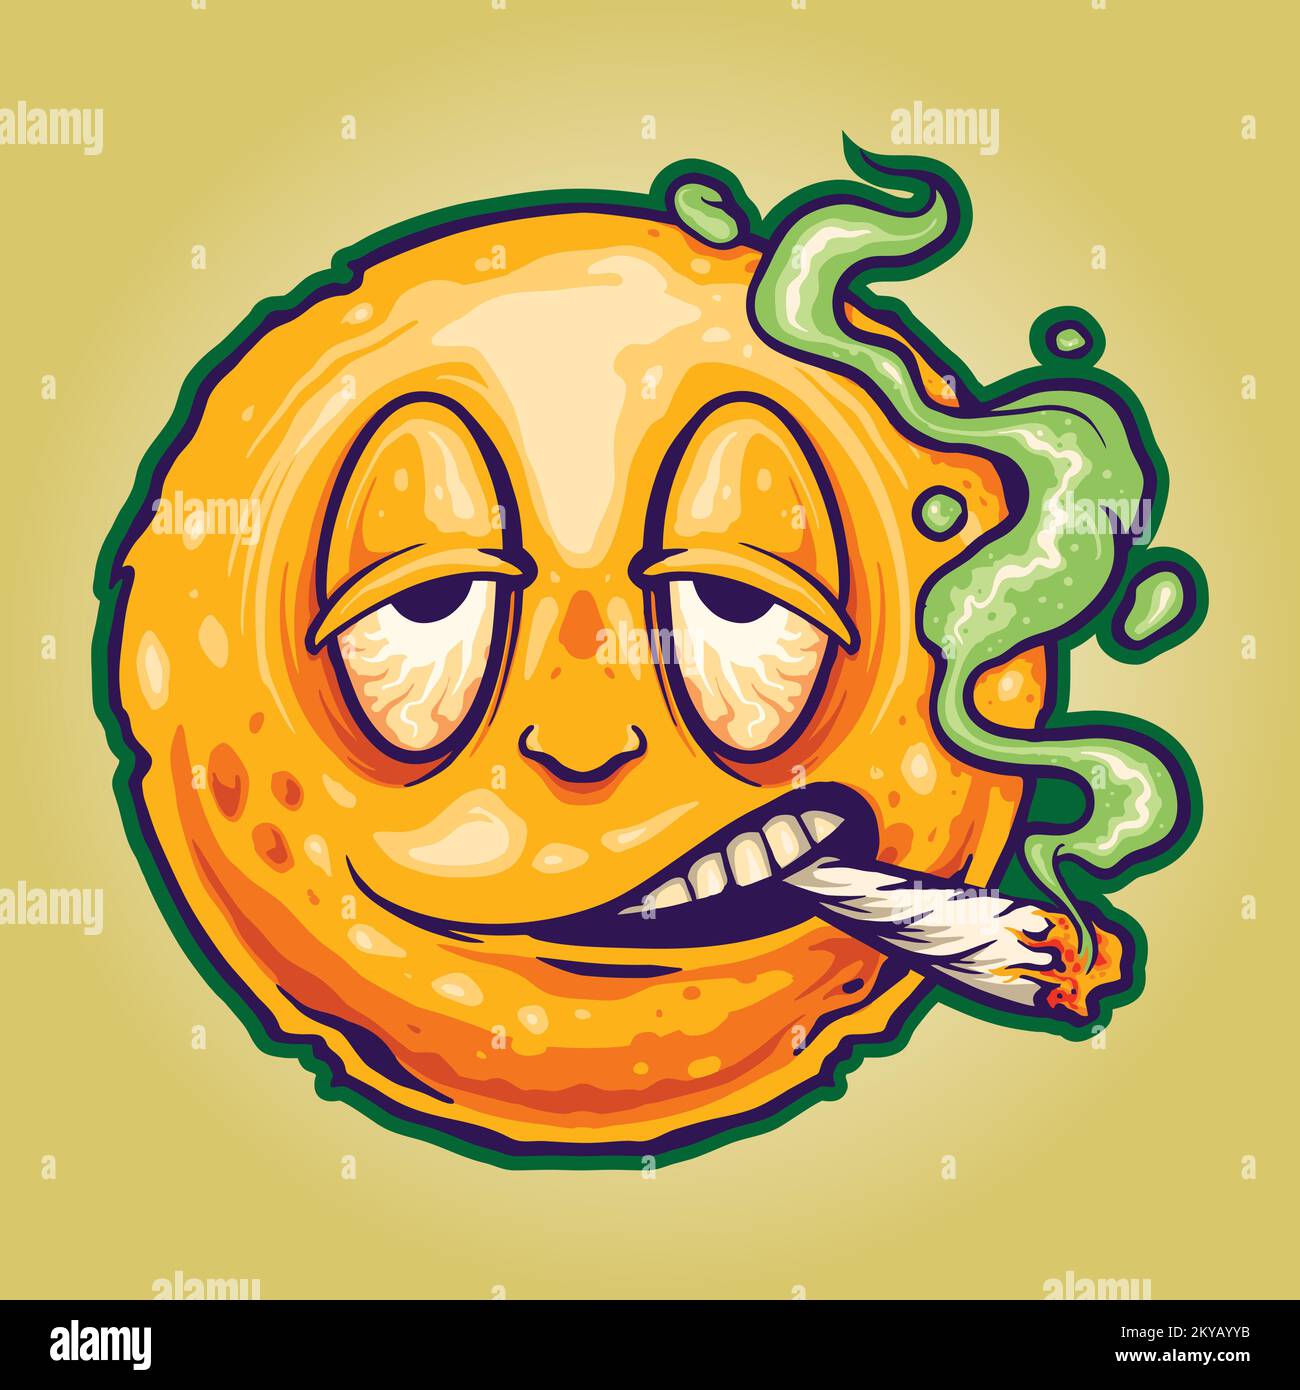 Lustiges Smiley-Gesicht Emoticon rauchen Cannabis Illustration Vektorbilder für Ihr Arbeitslogo, Merchandise-T-Shirt, Aufkleber und Etikettendesigns Stock Vektor